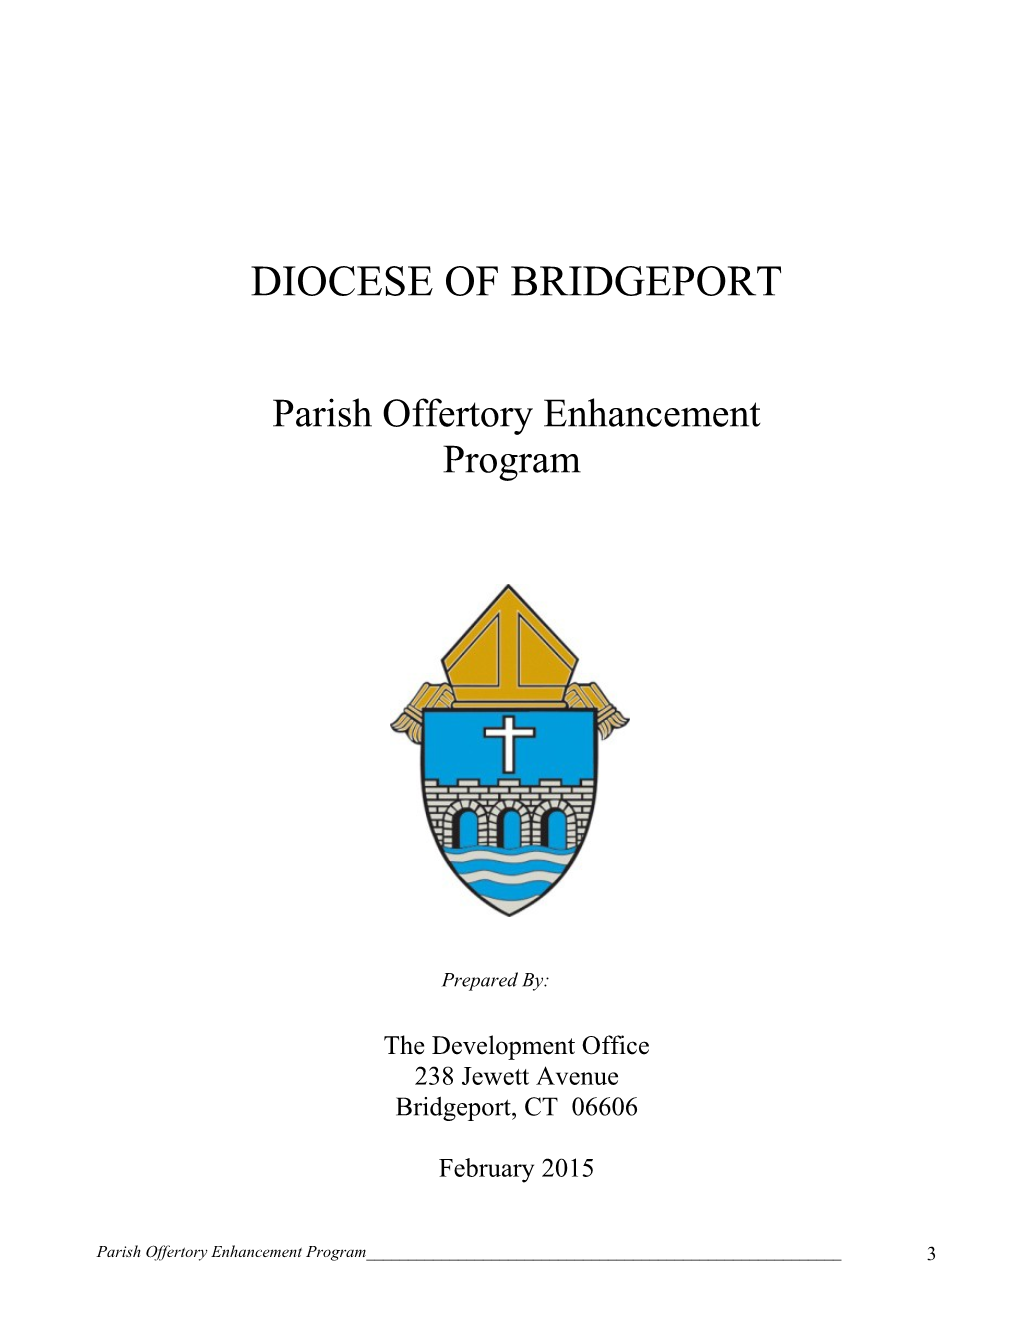 Diocese of Bridgeport